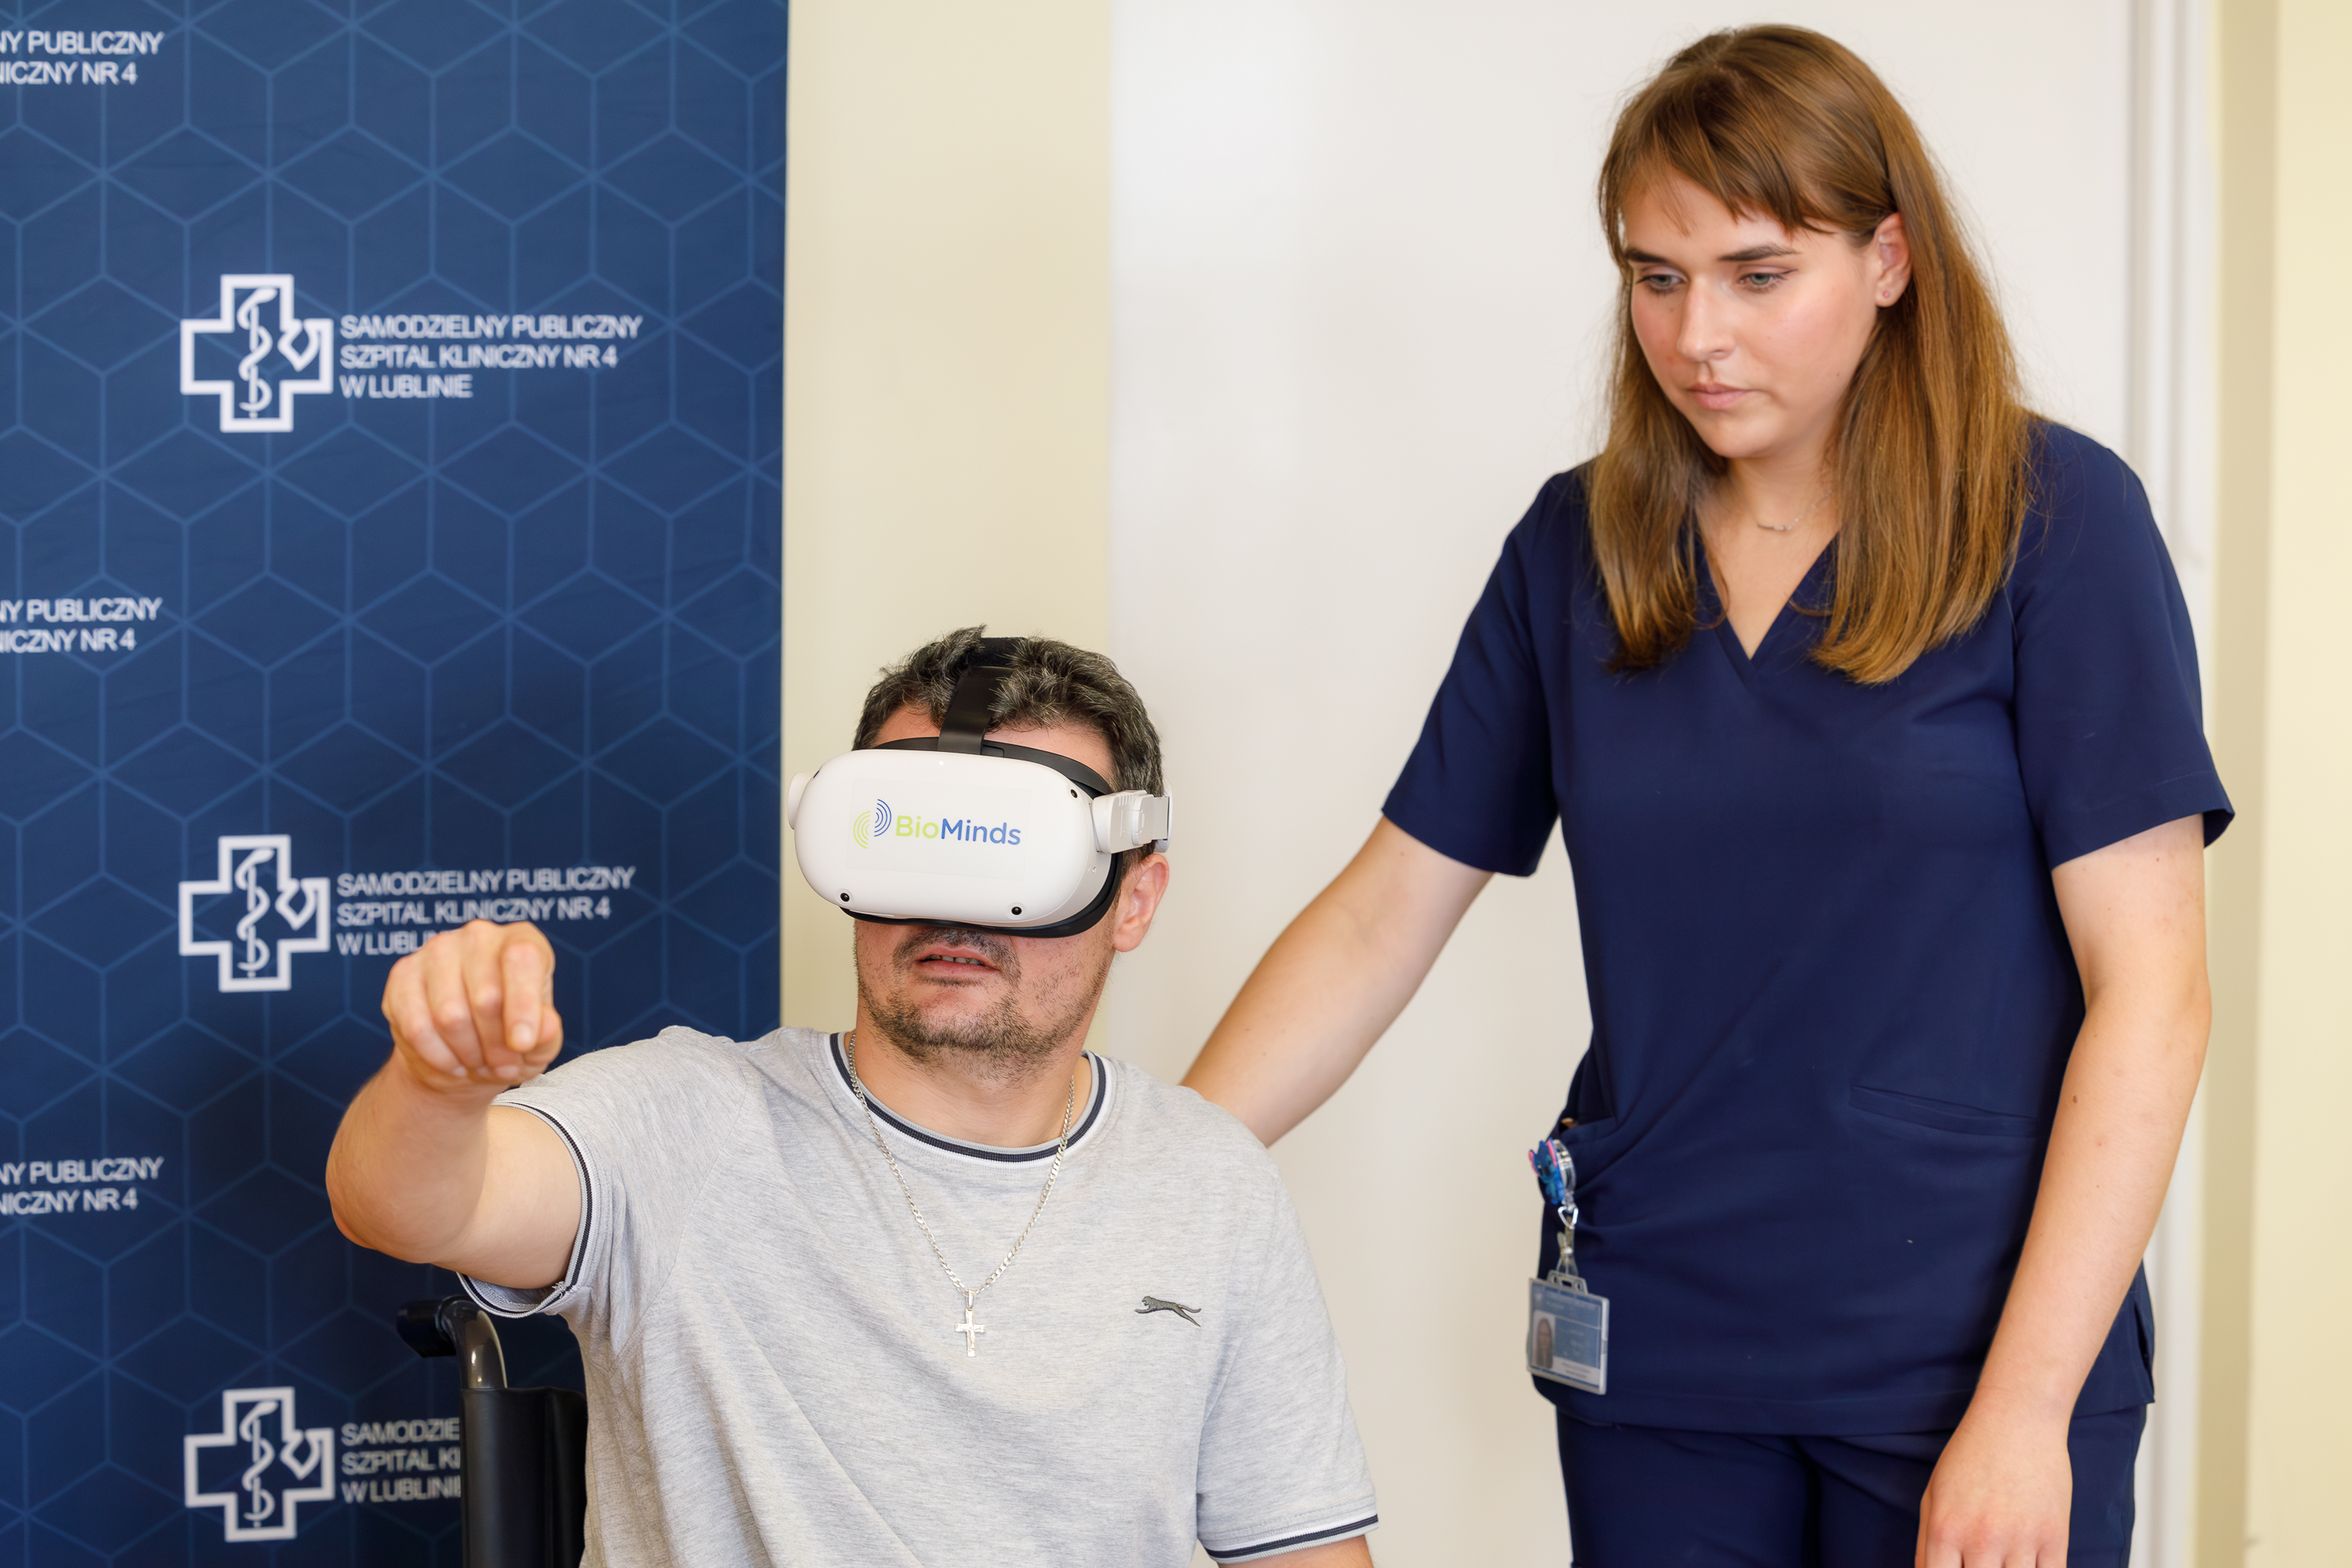 Pacjent na wózku używa okularów VR w celu rehabilitacji, obok stoi lekarka